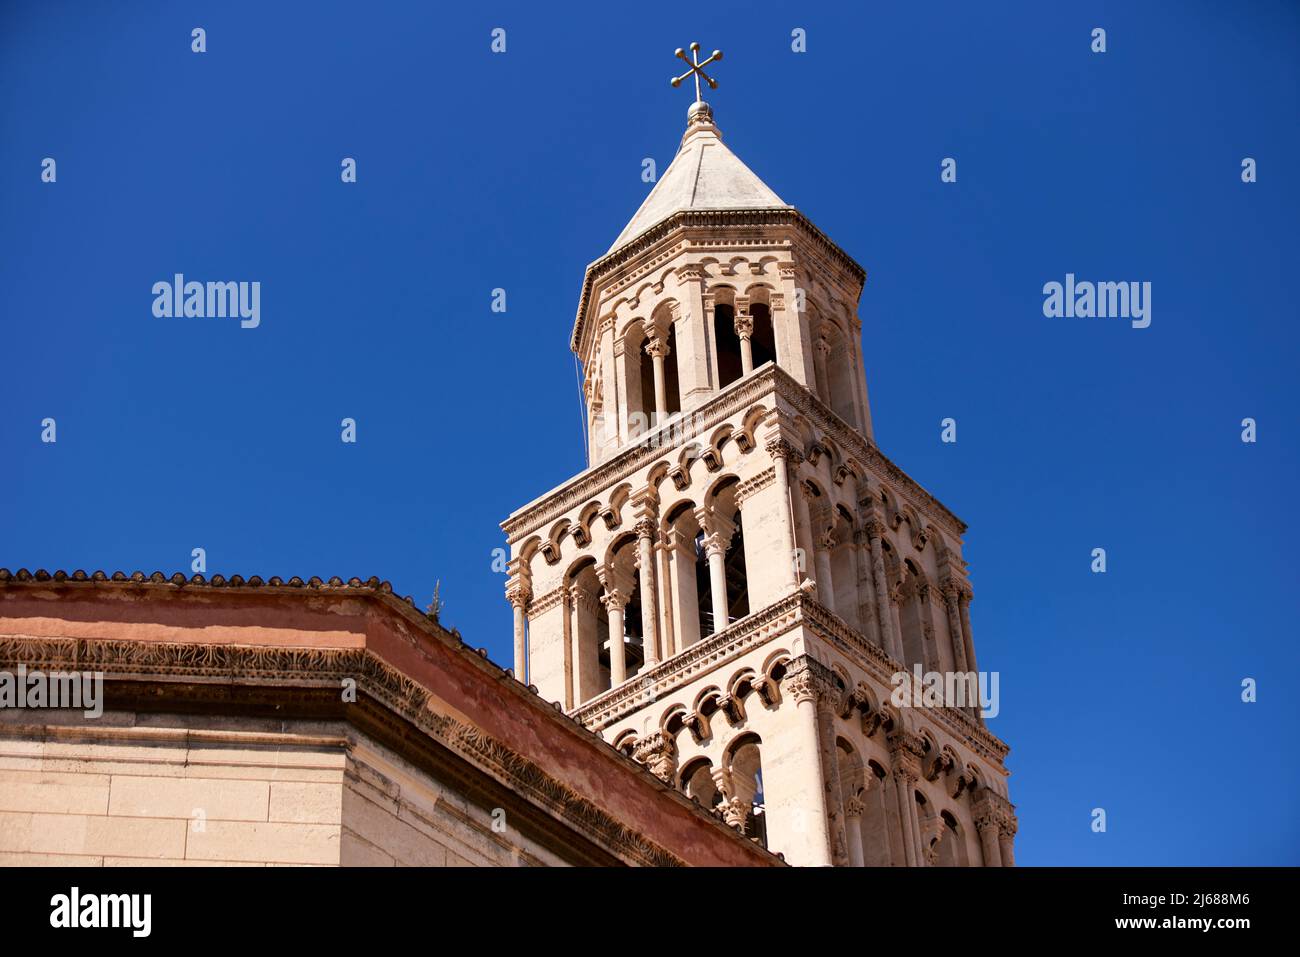 La ville de Split en Croatie dans la région de Dalmatie, site touristique de la cathédrale Saint Domnius Banque D'Images